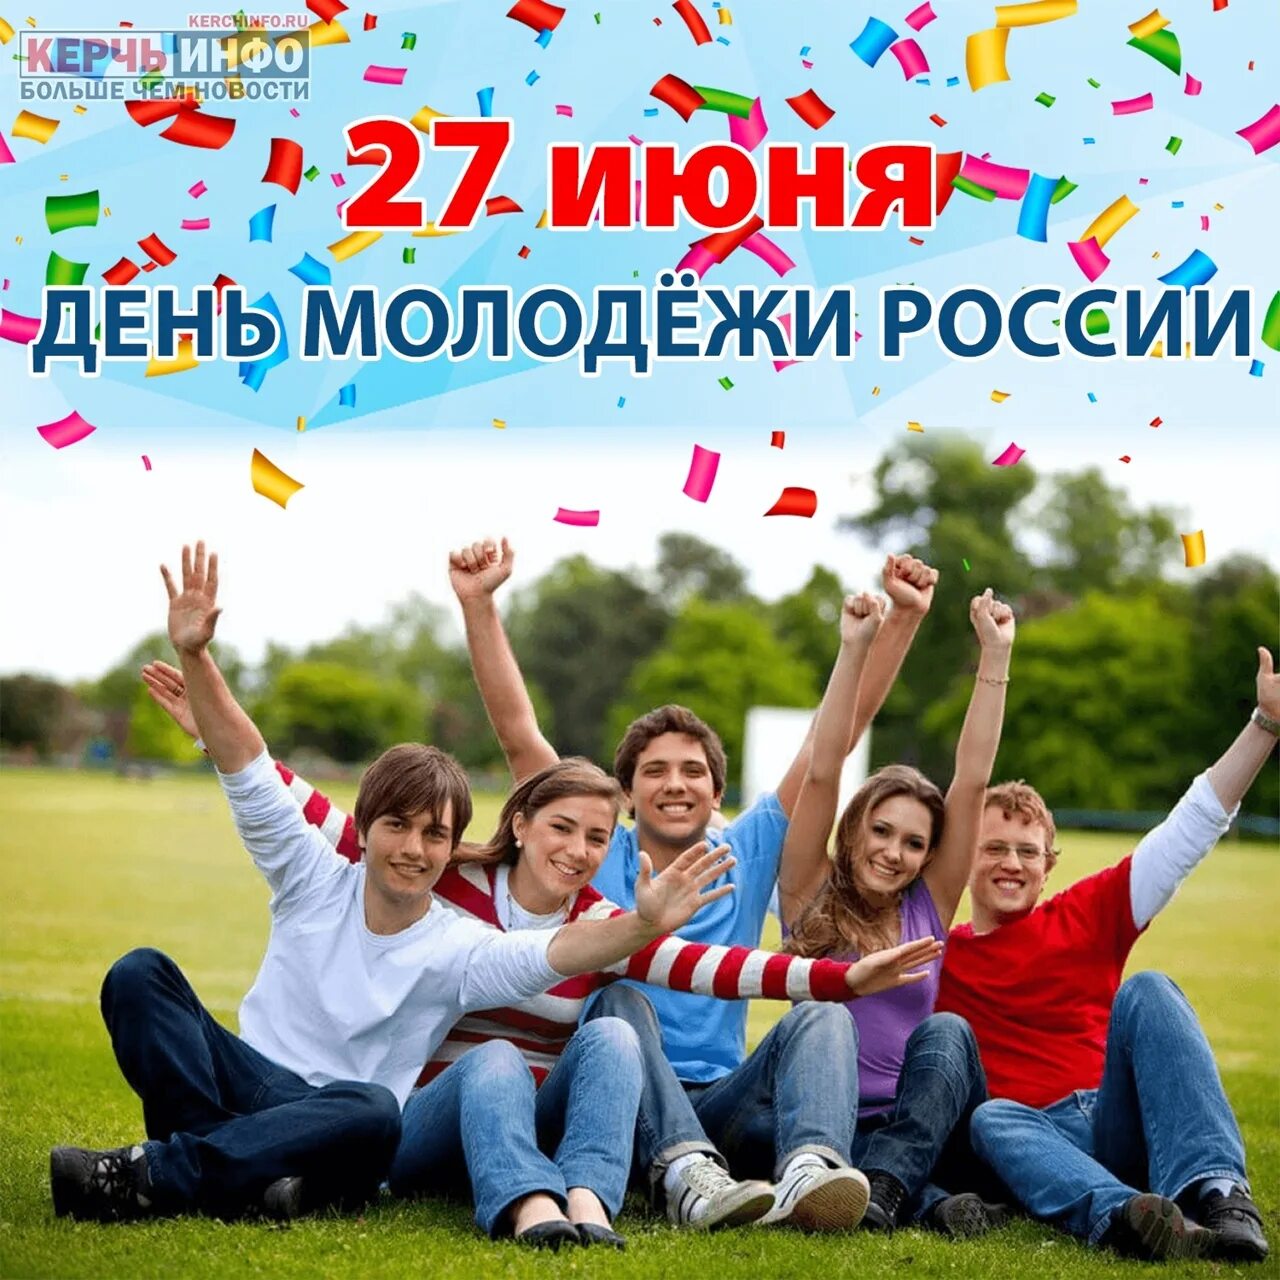 С днем молодежи. День молодёжи (Россия). С праздником молодежи. 27 Июня день молодежи России. Какие молодежные праздники отмечаются